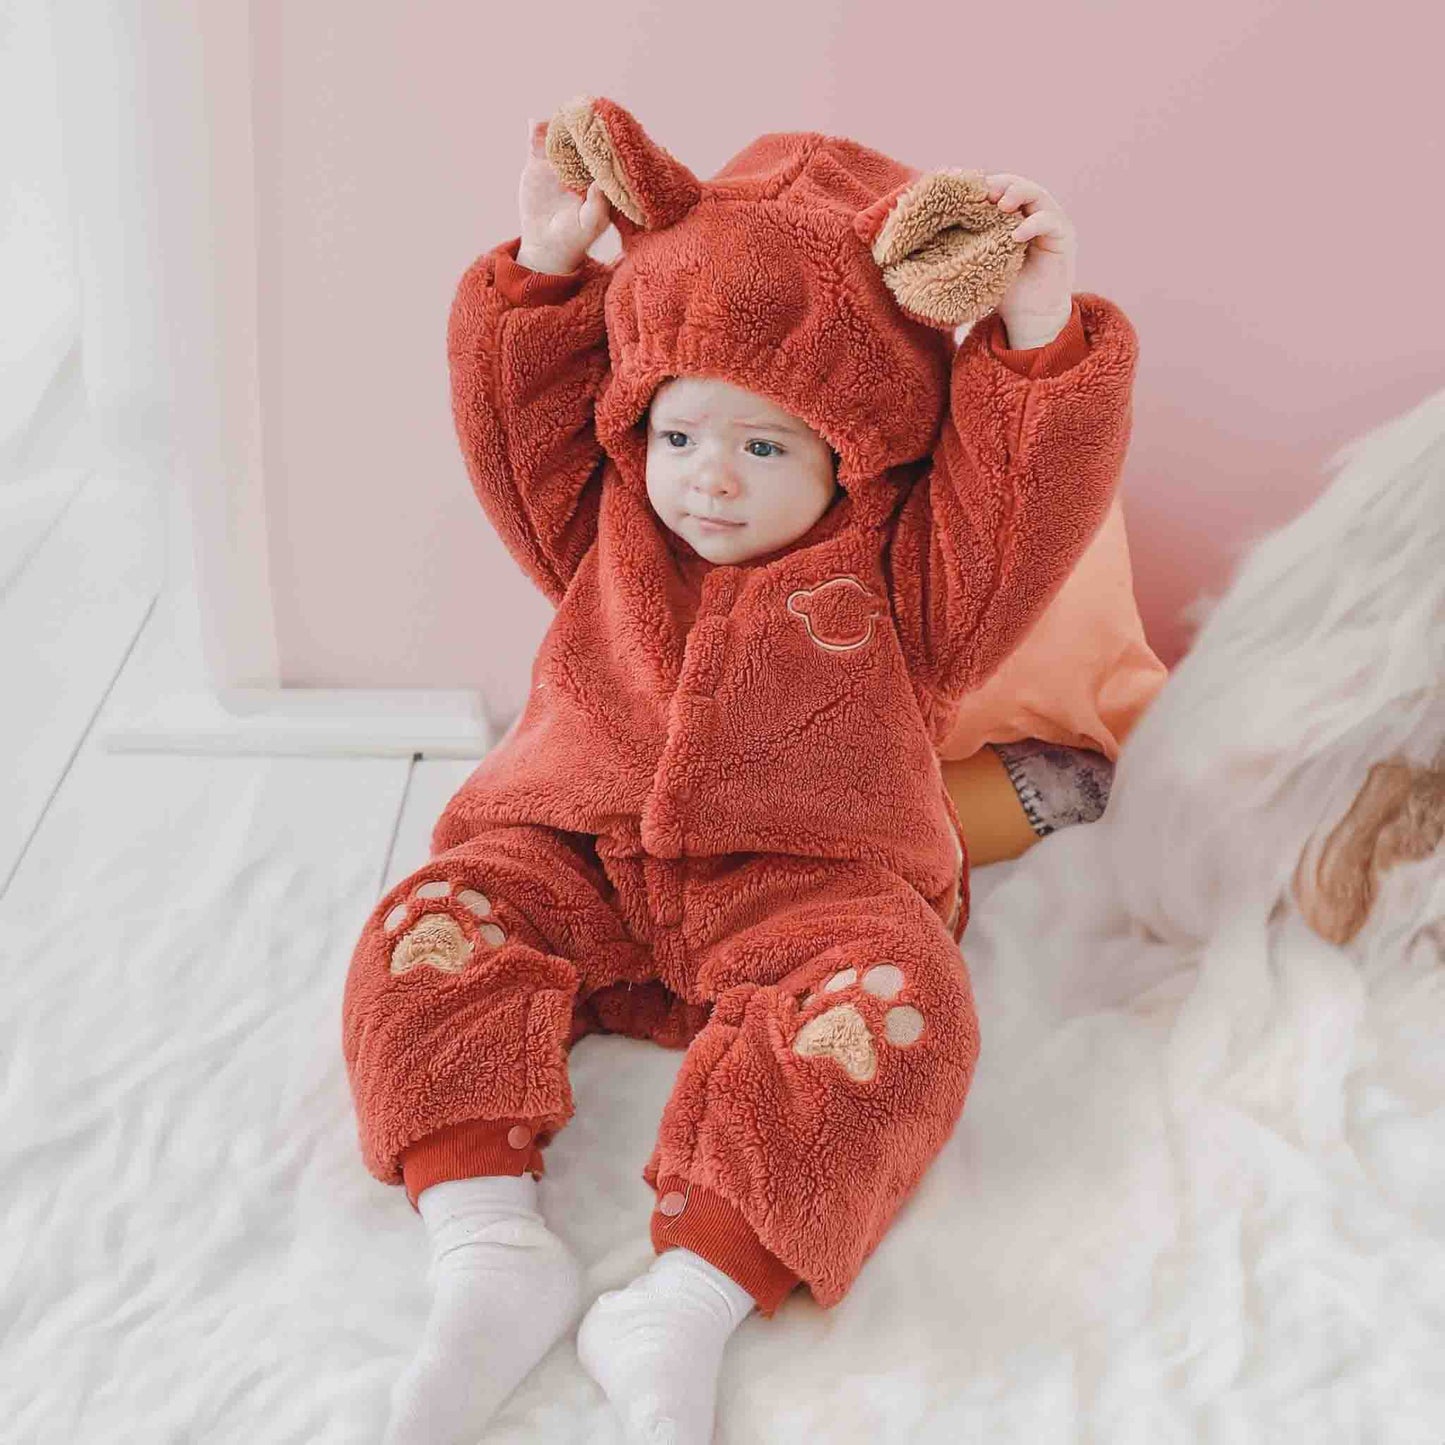 Quilted Baby Romper: Cozy Baby Fleece Jumpsuit